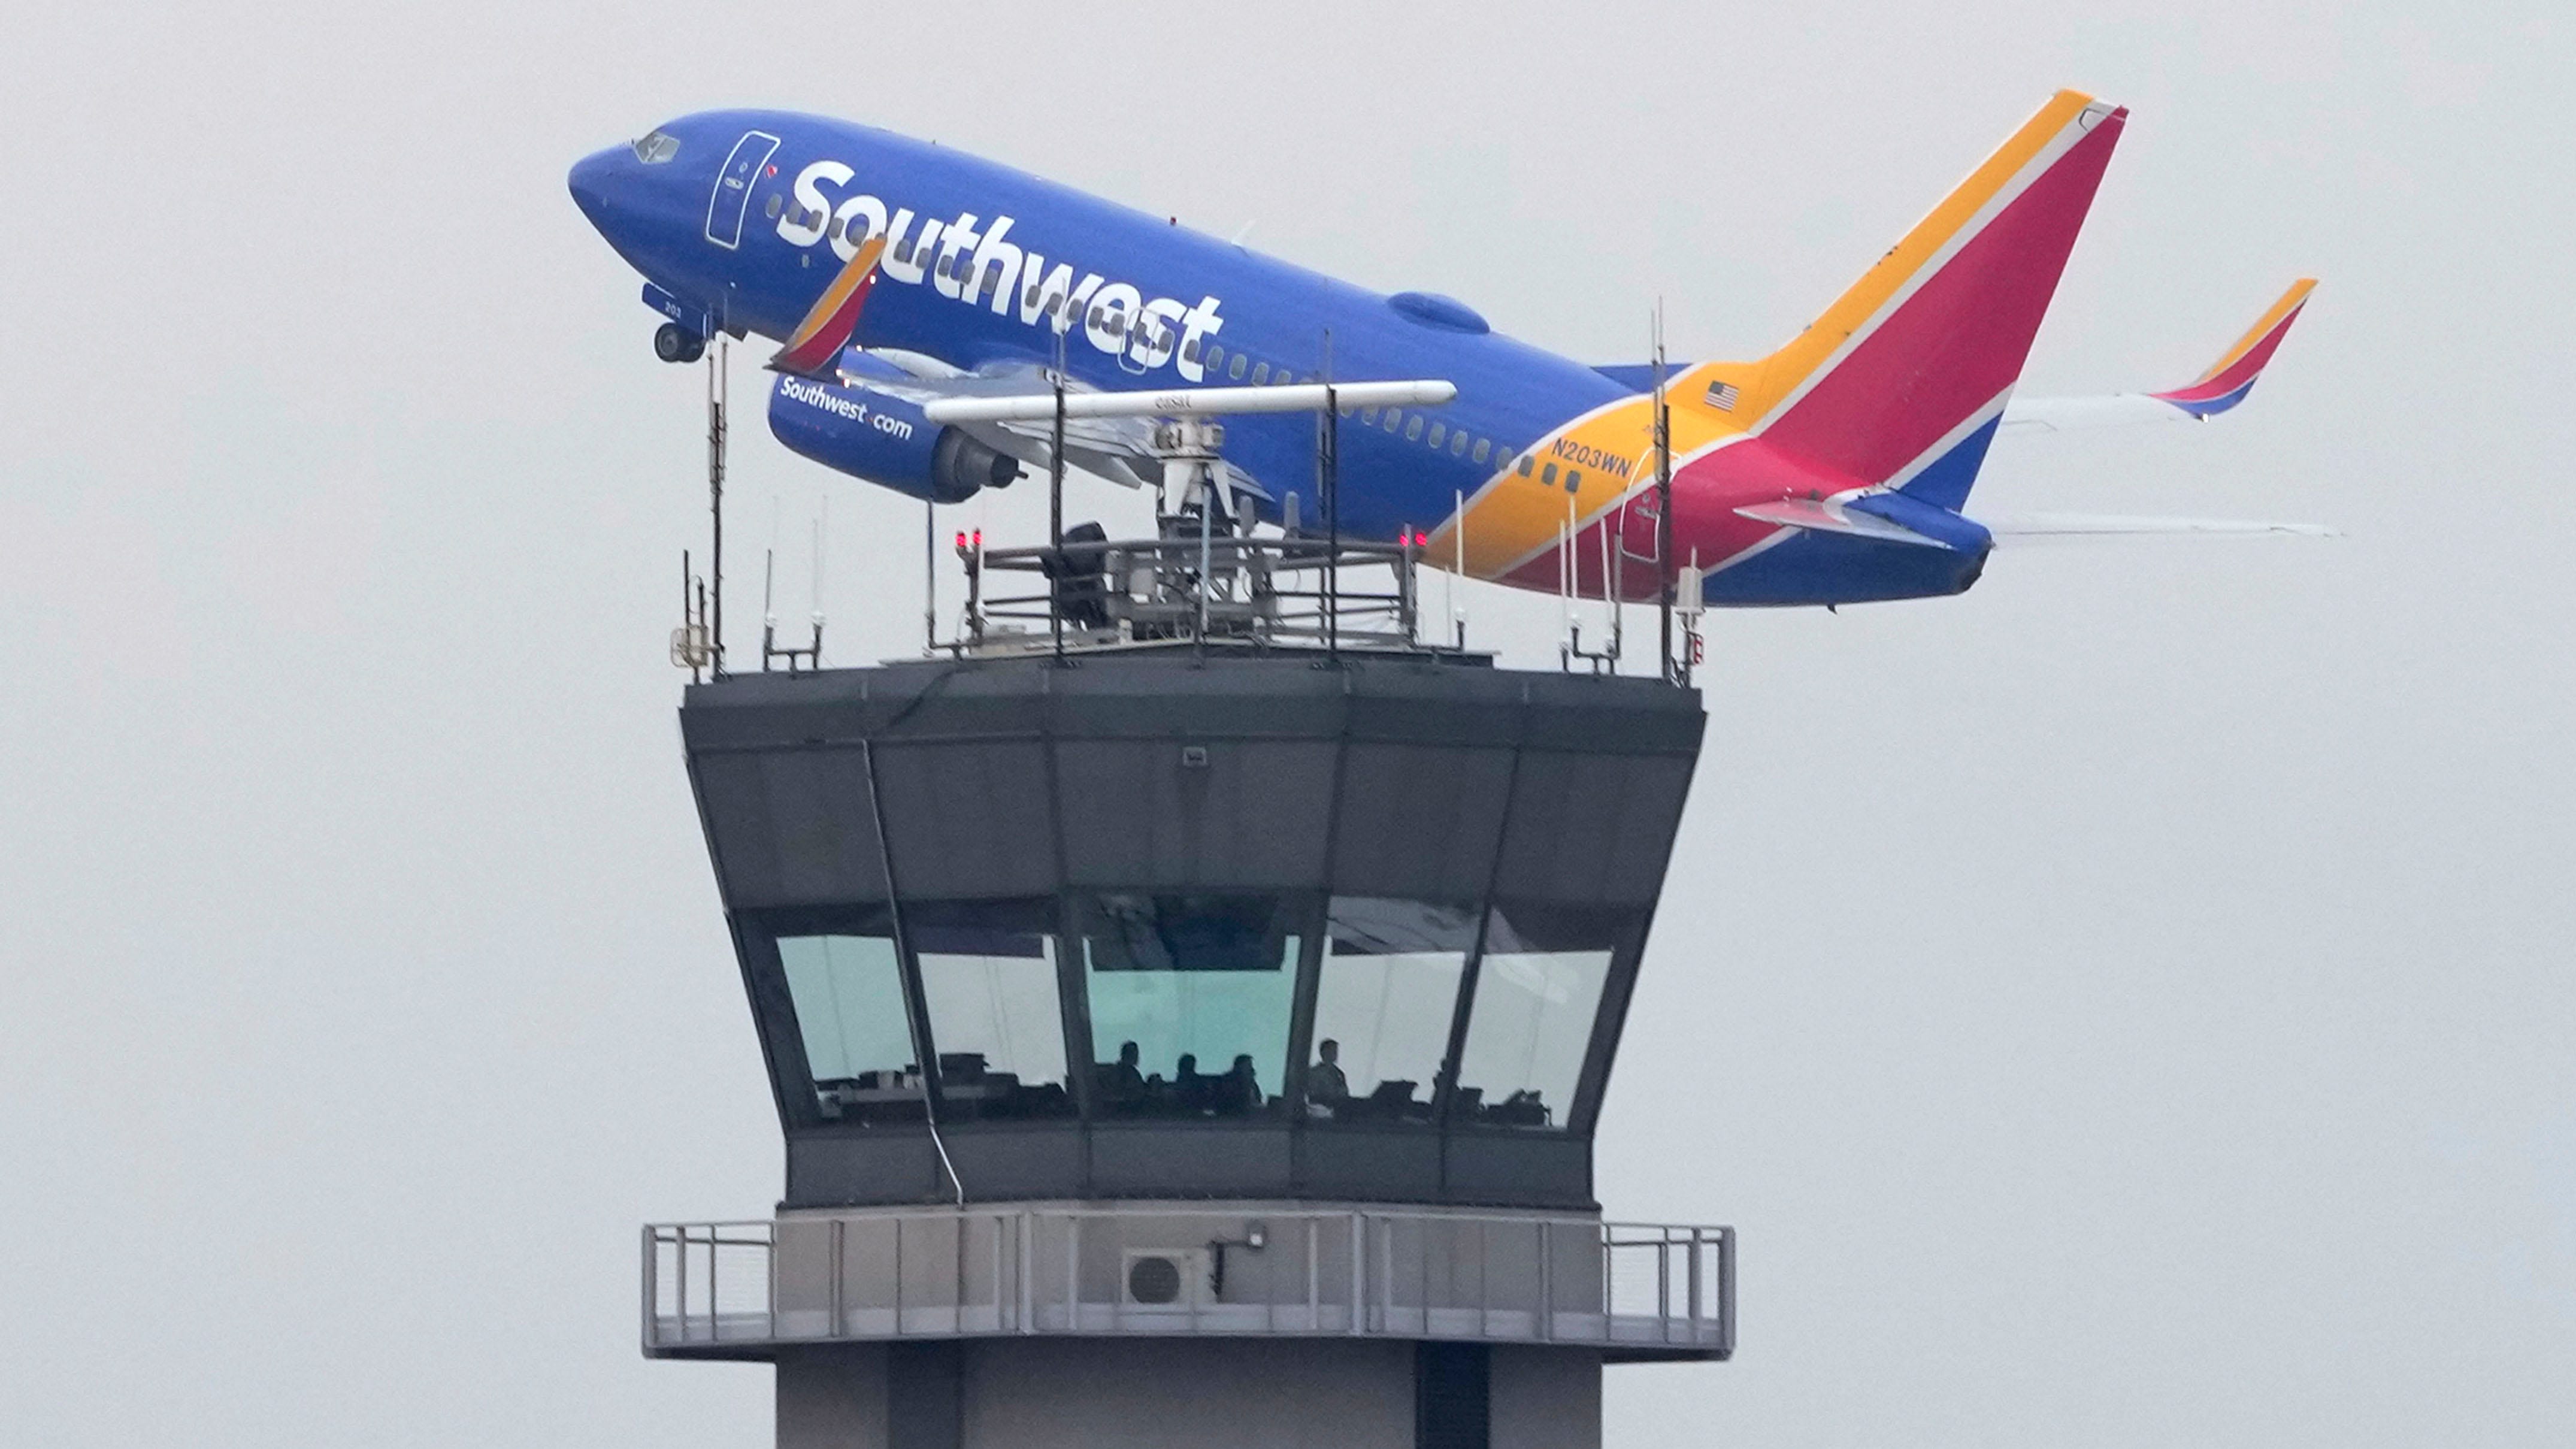 Flugzeug der Southwest Airlines hebt in Chicago ab